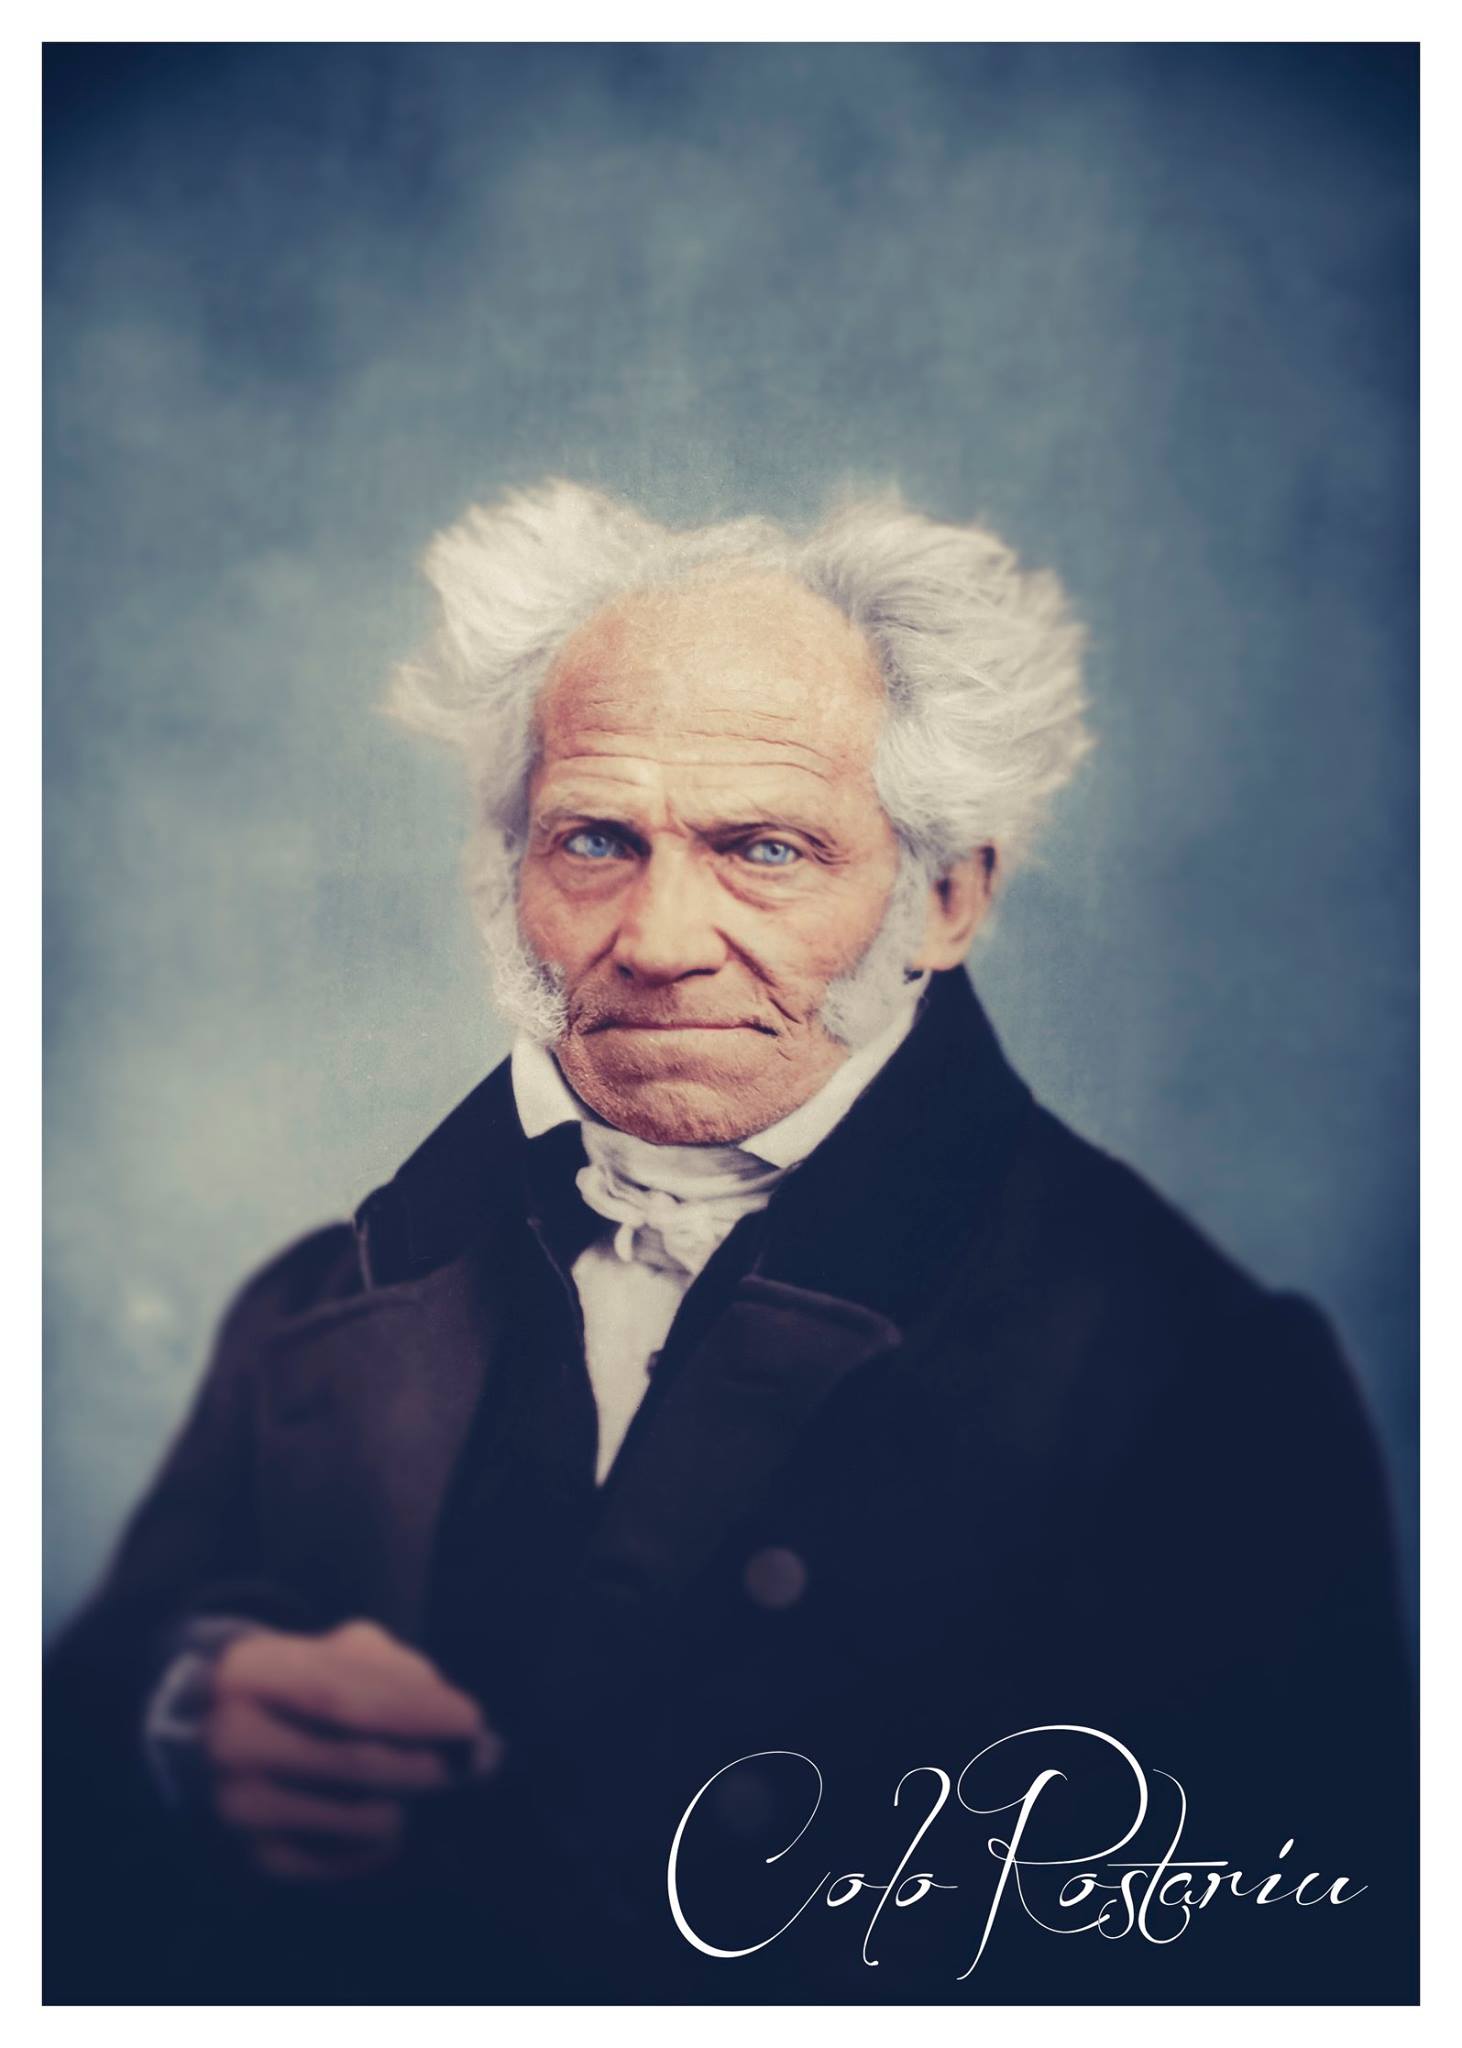 Arthur Schopenhauer, a German philosopher | coloRostariu